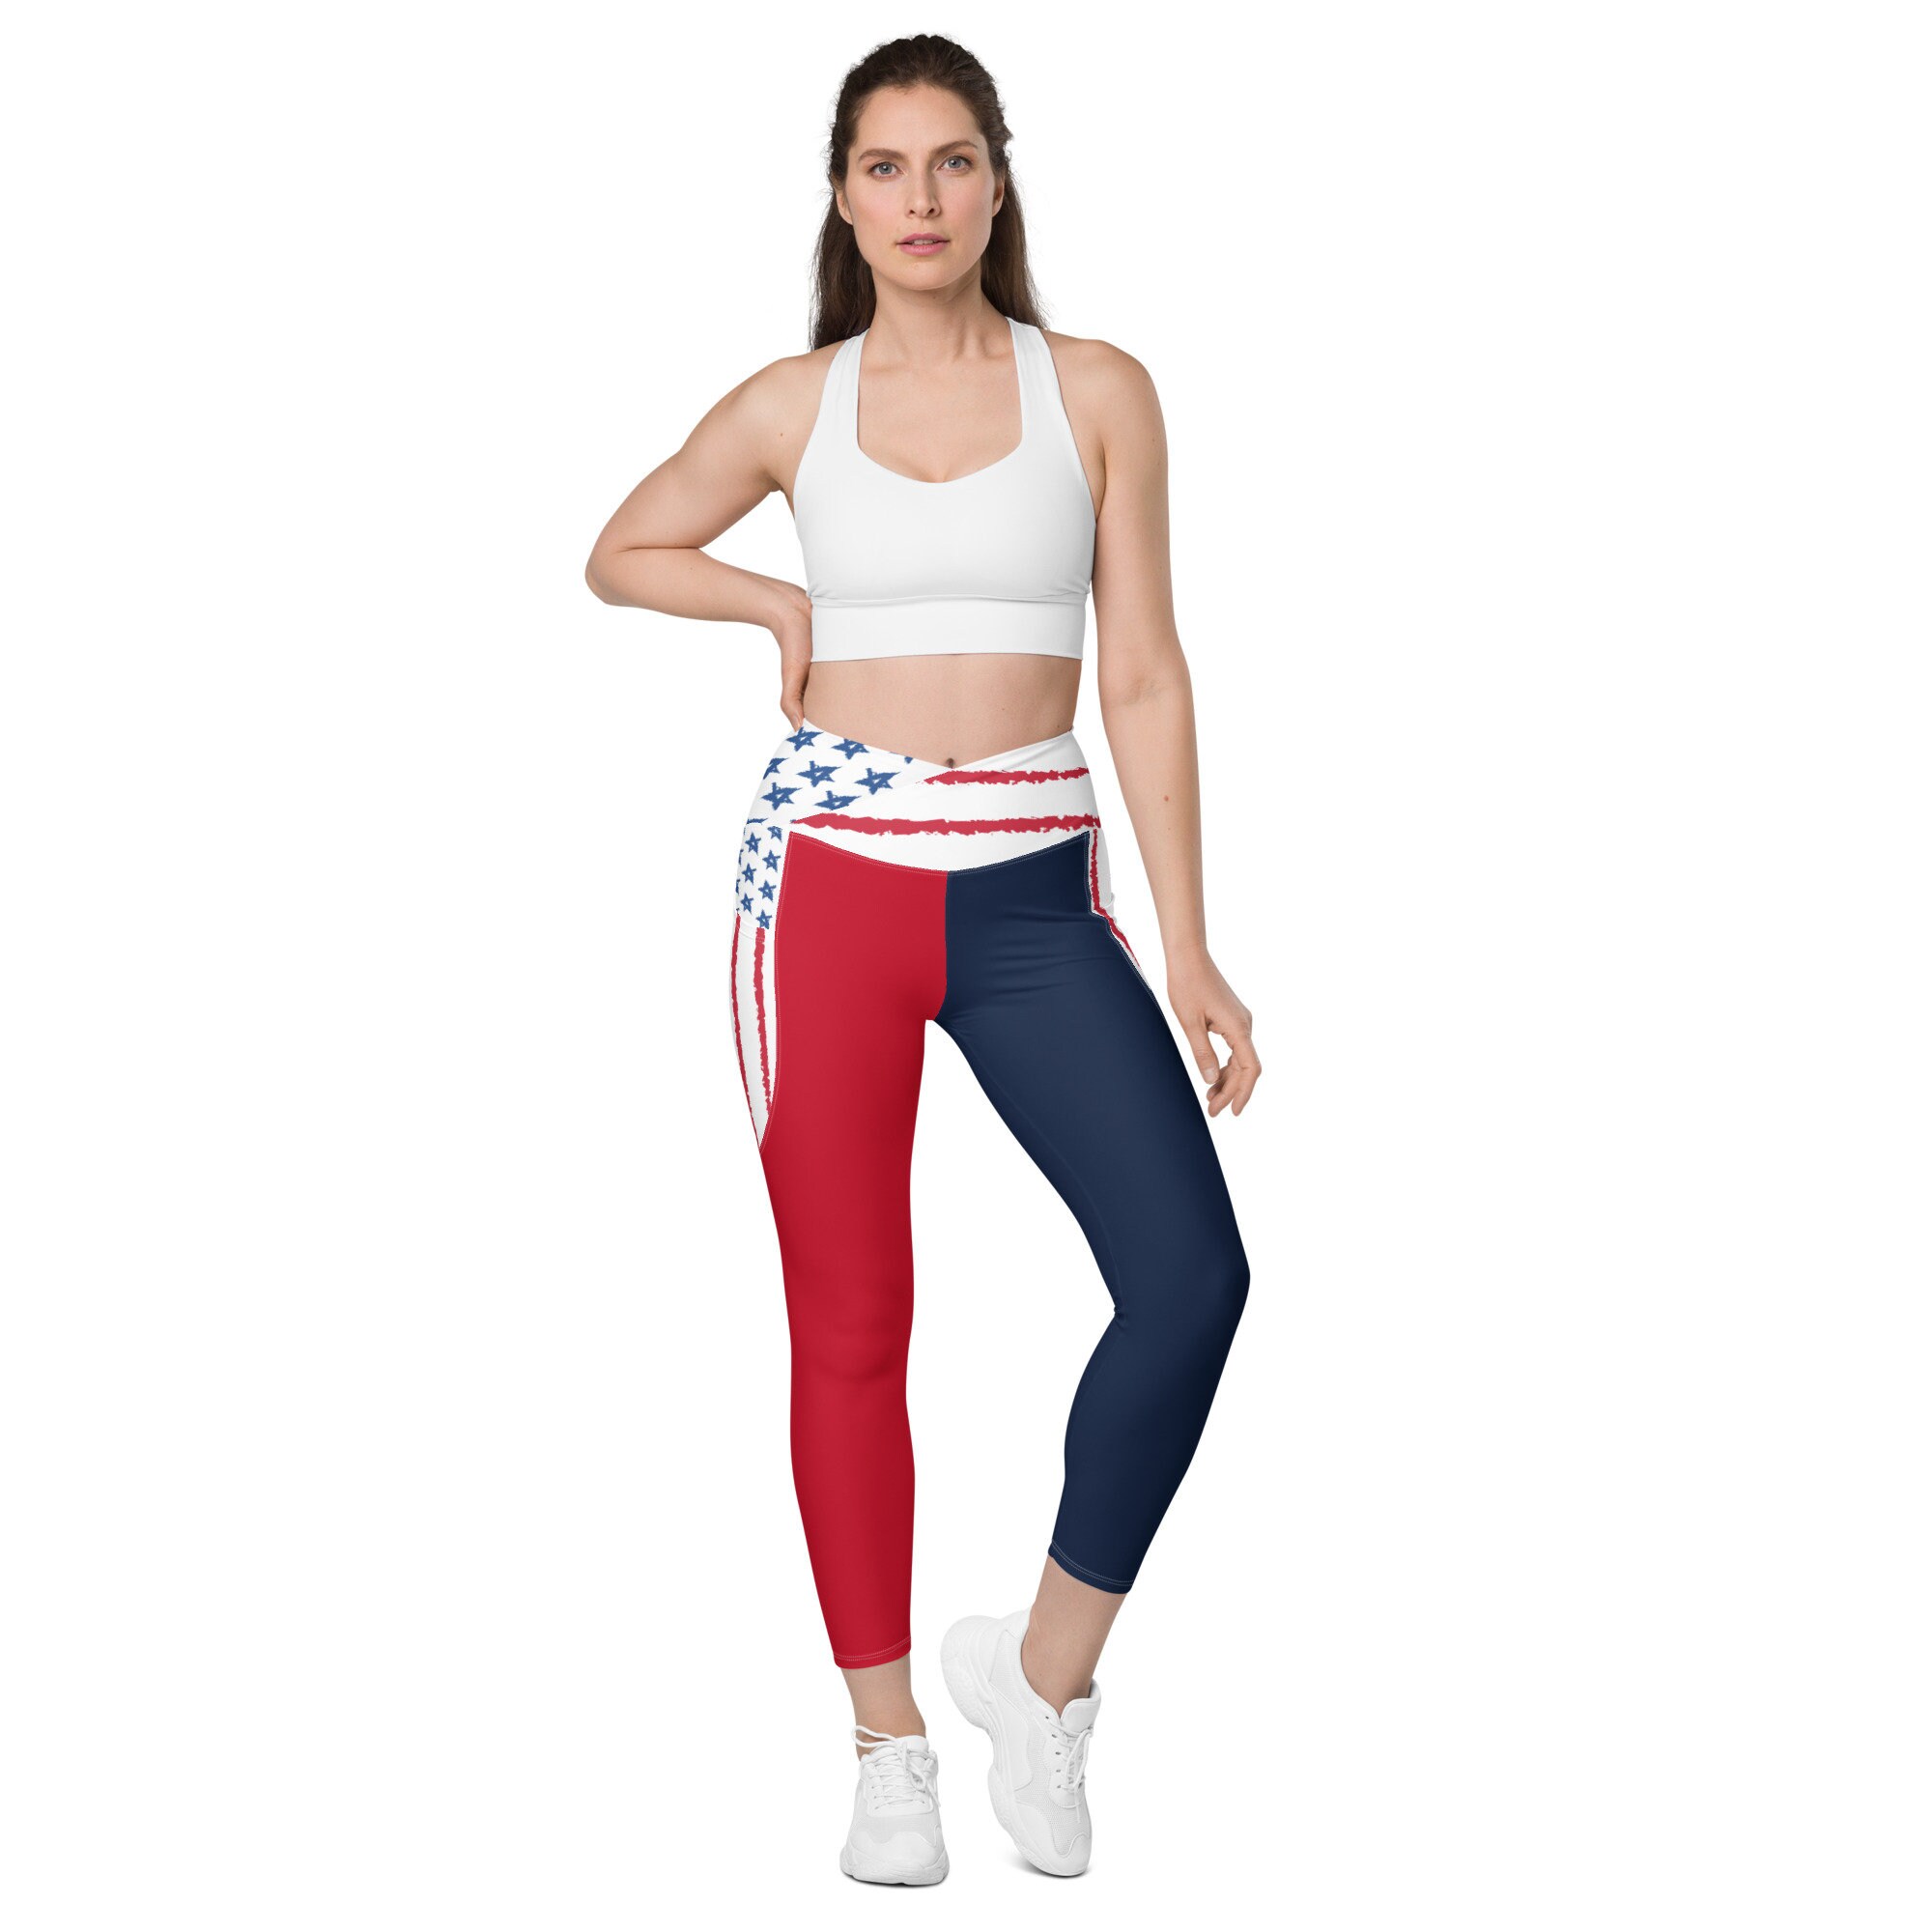 Yoga Pants for Women,Casual American Flag Printed Skinny Capri Plus Size Pants 